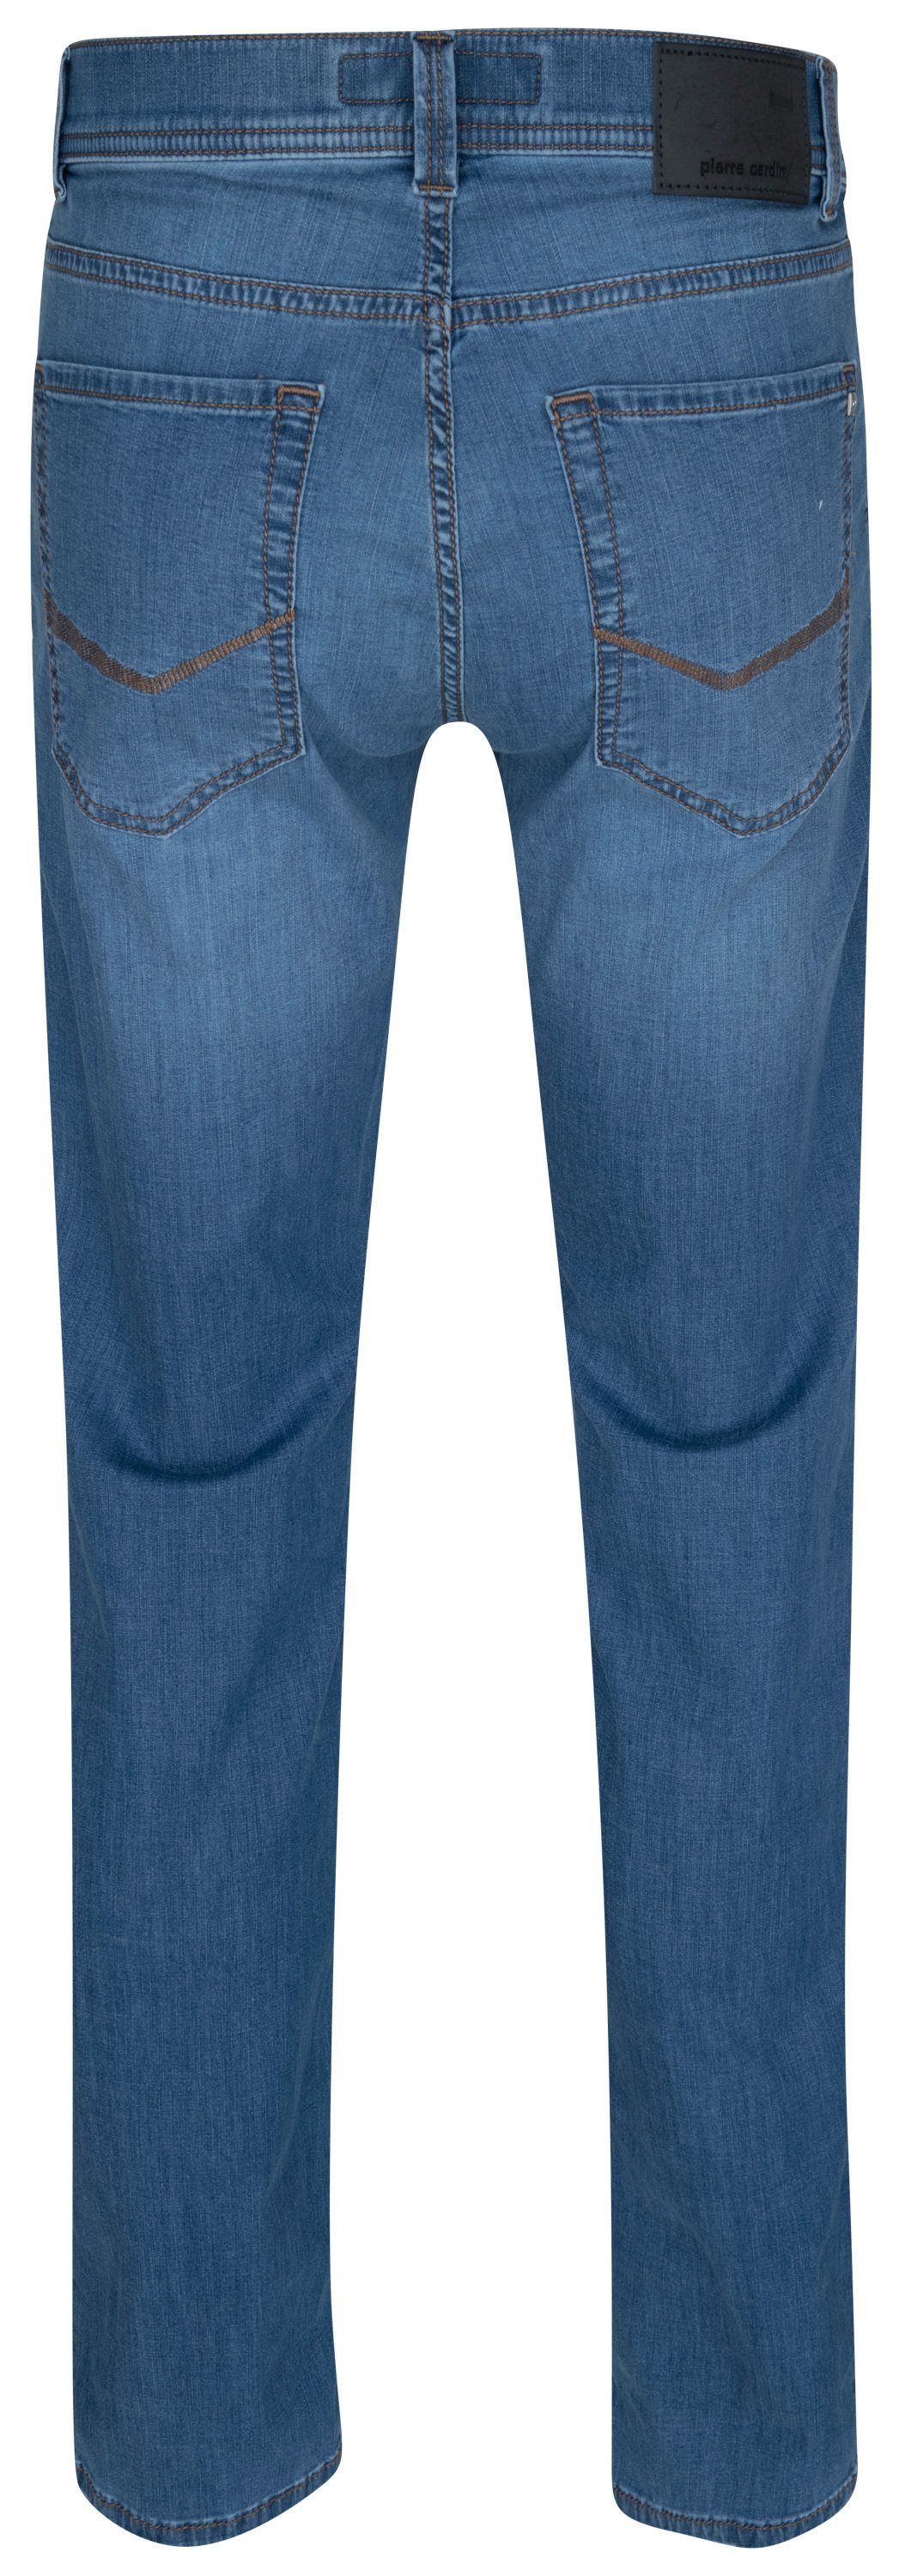 CARDIN Cardin LYON 5-Pocket-Jeans TAPERED 7730.6837 34510 - blue fashion FUTURE Pierre PIERRE ocean